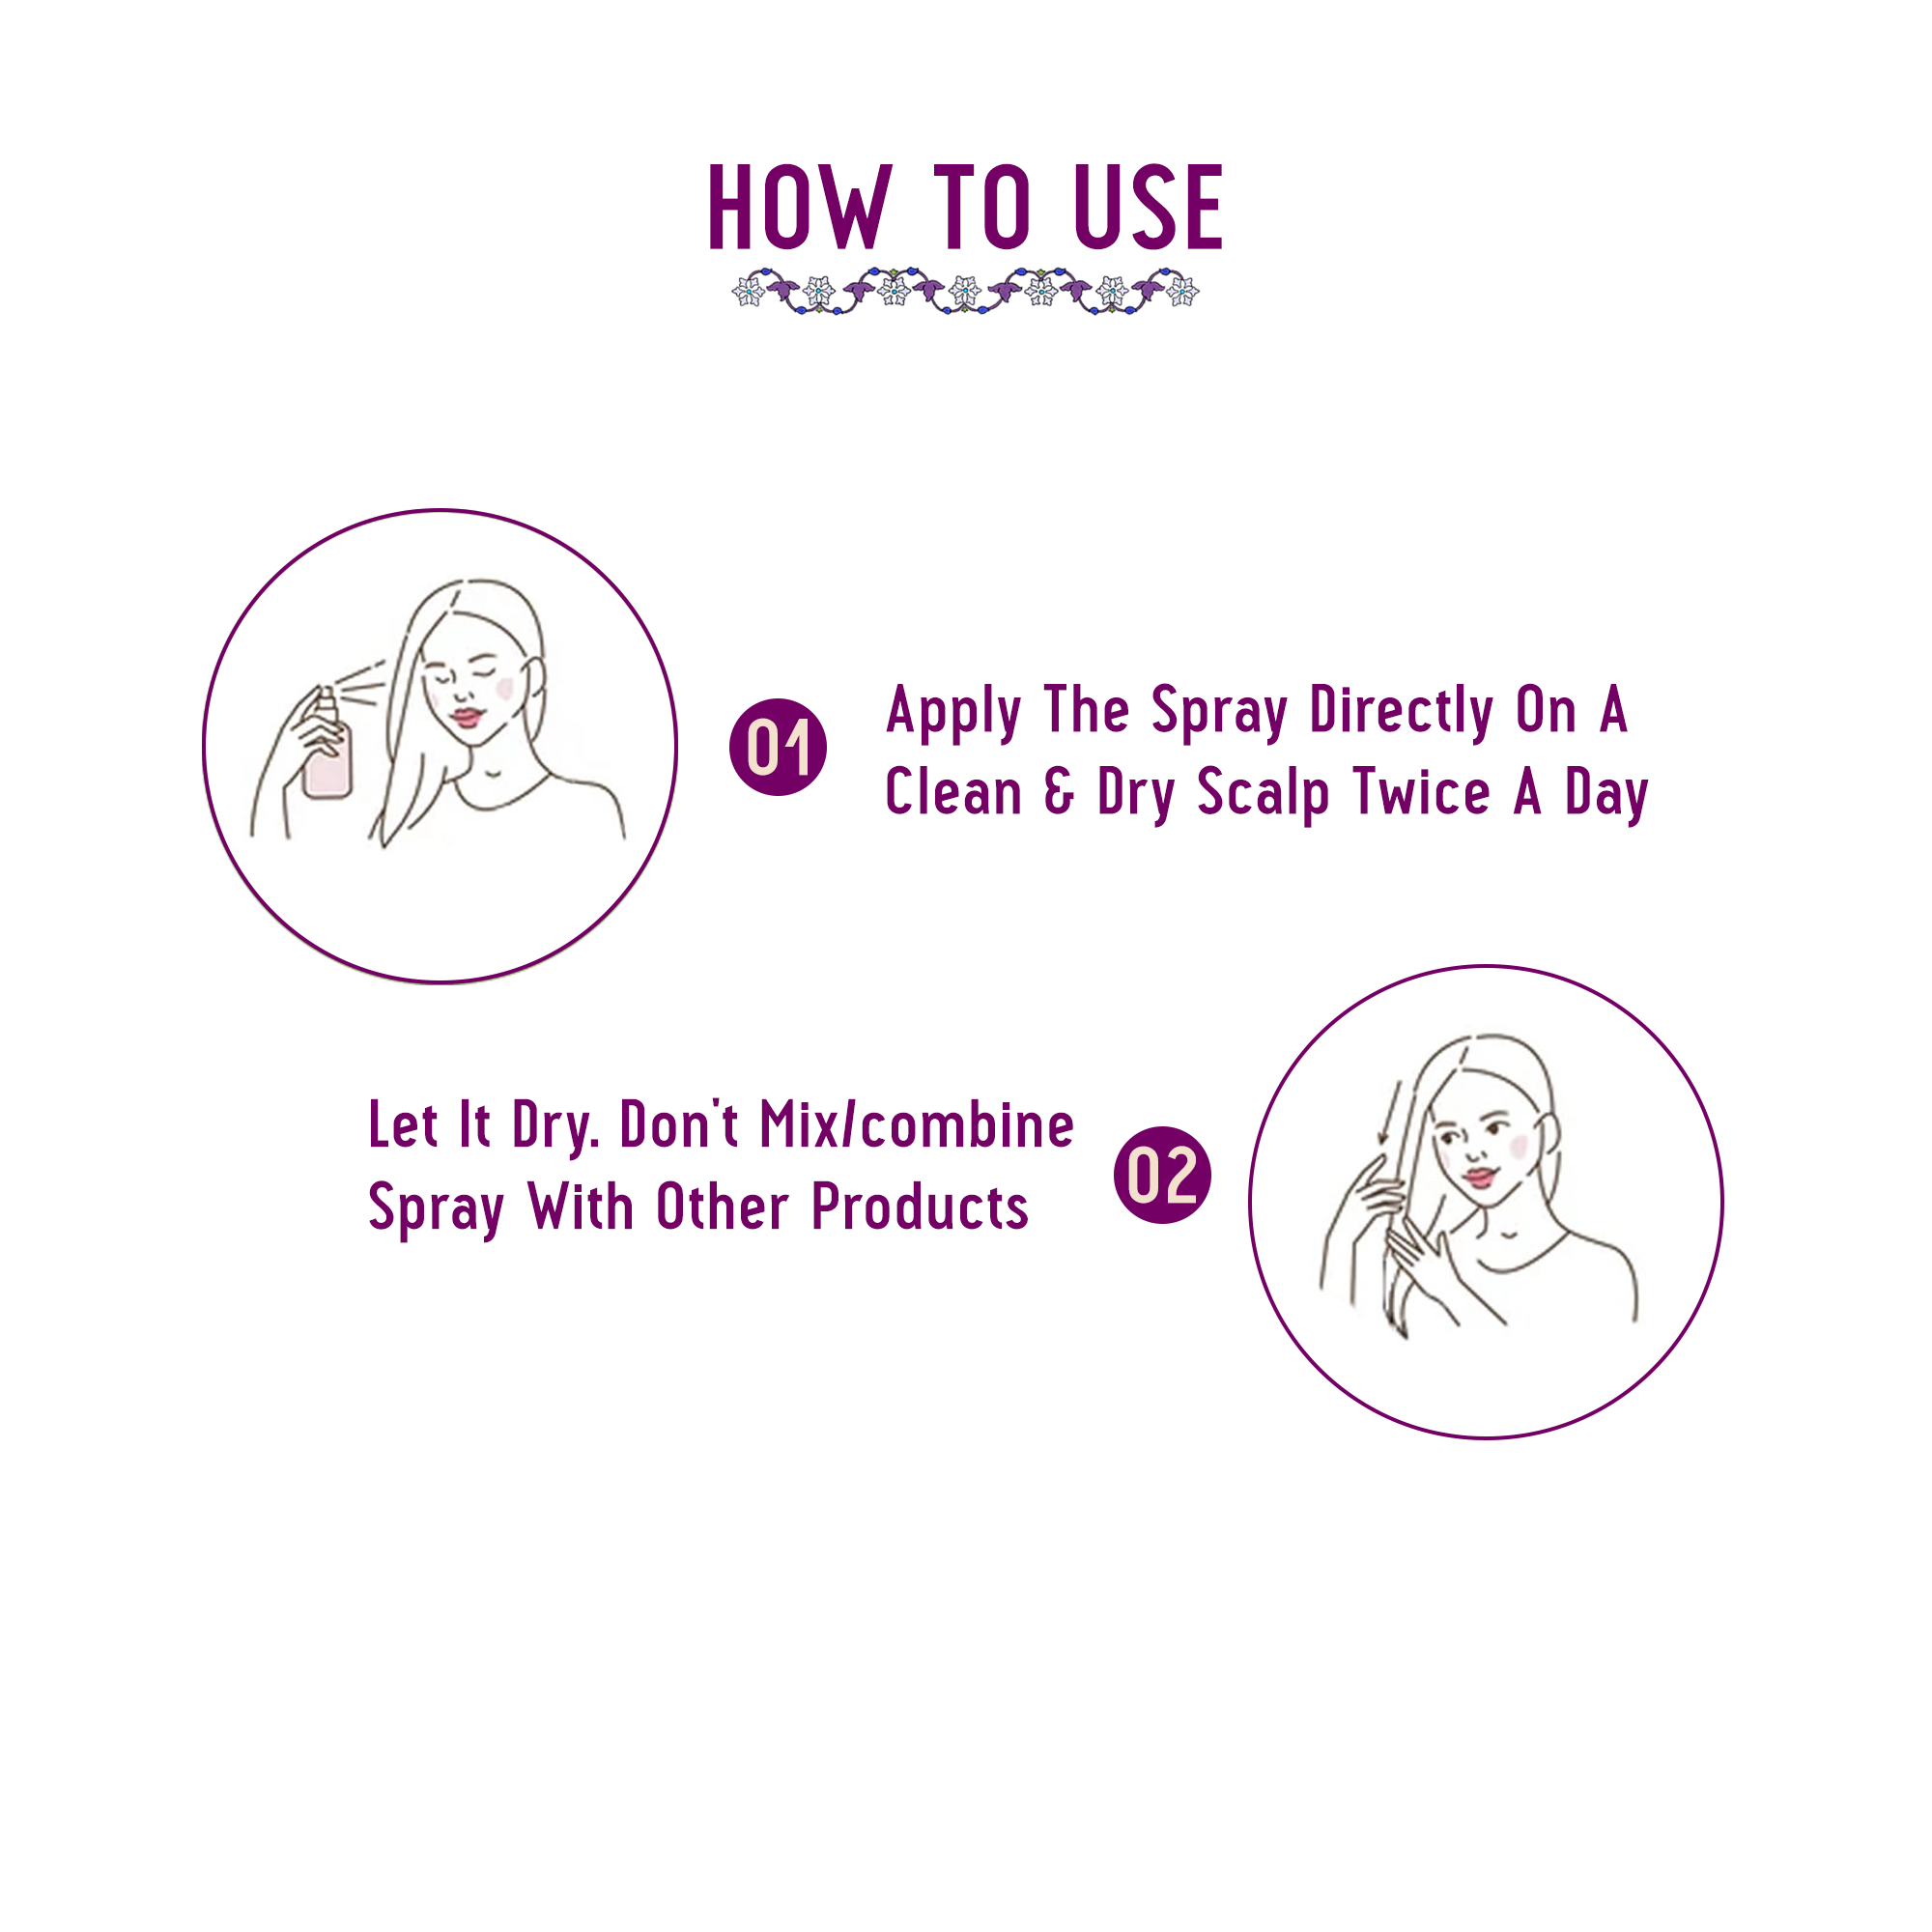 Anti Grey Kit - Hair Oil and Scalp Spray